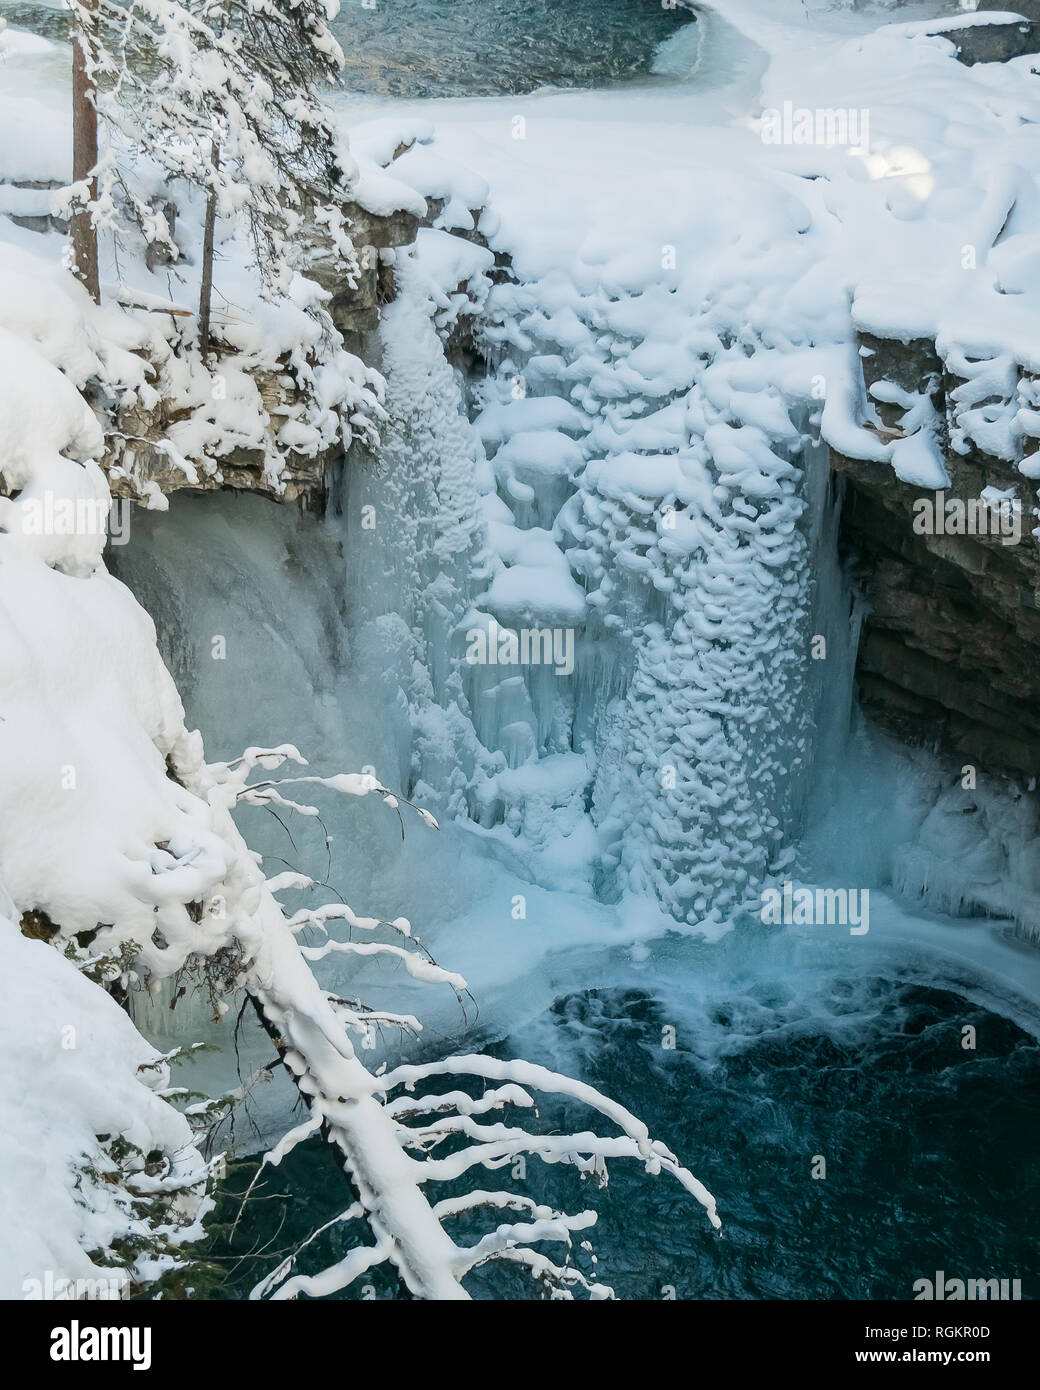 Eine schöne gefrorenen Wasserfall erzeugt eine eisige winterliche Szene in der Johnston Canyon in den kanadischen Rockies Banff National Park in der Provinz Alberta Stockfoto